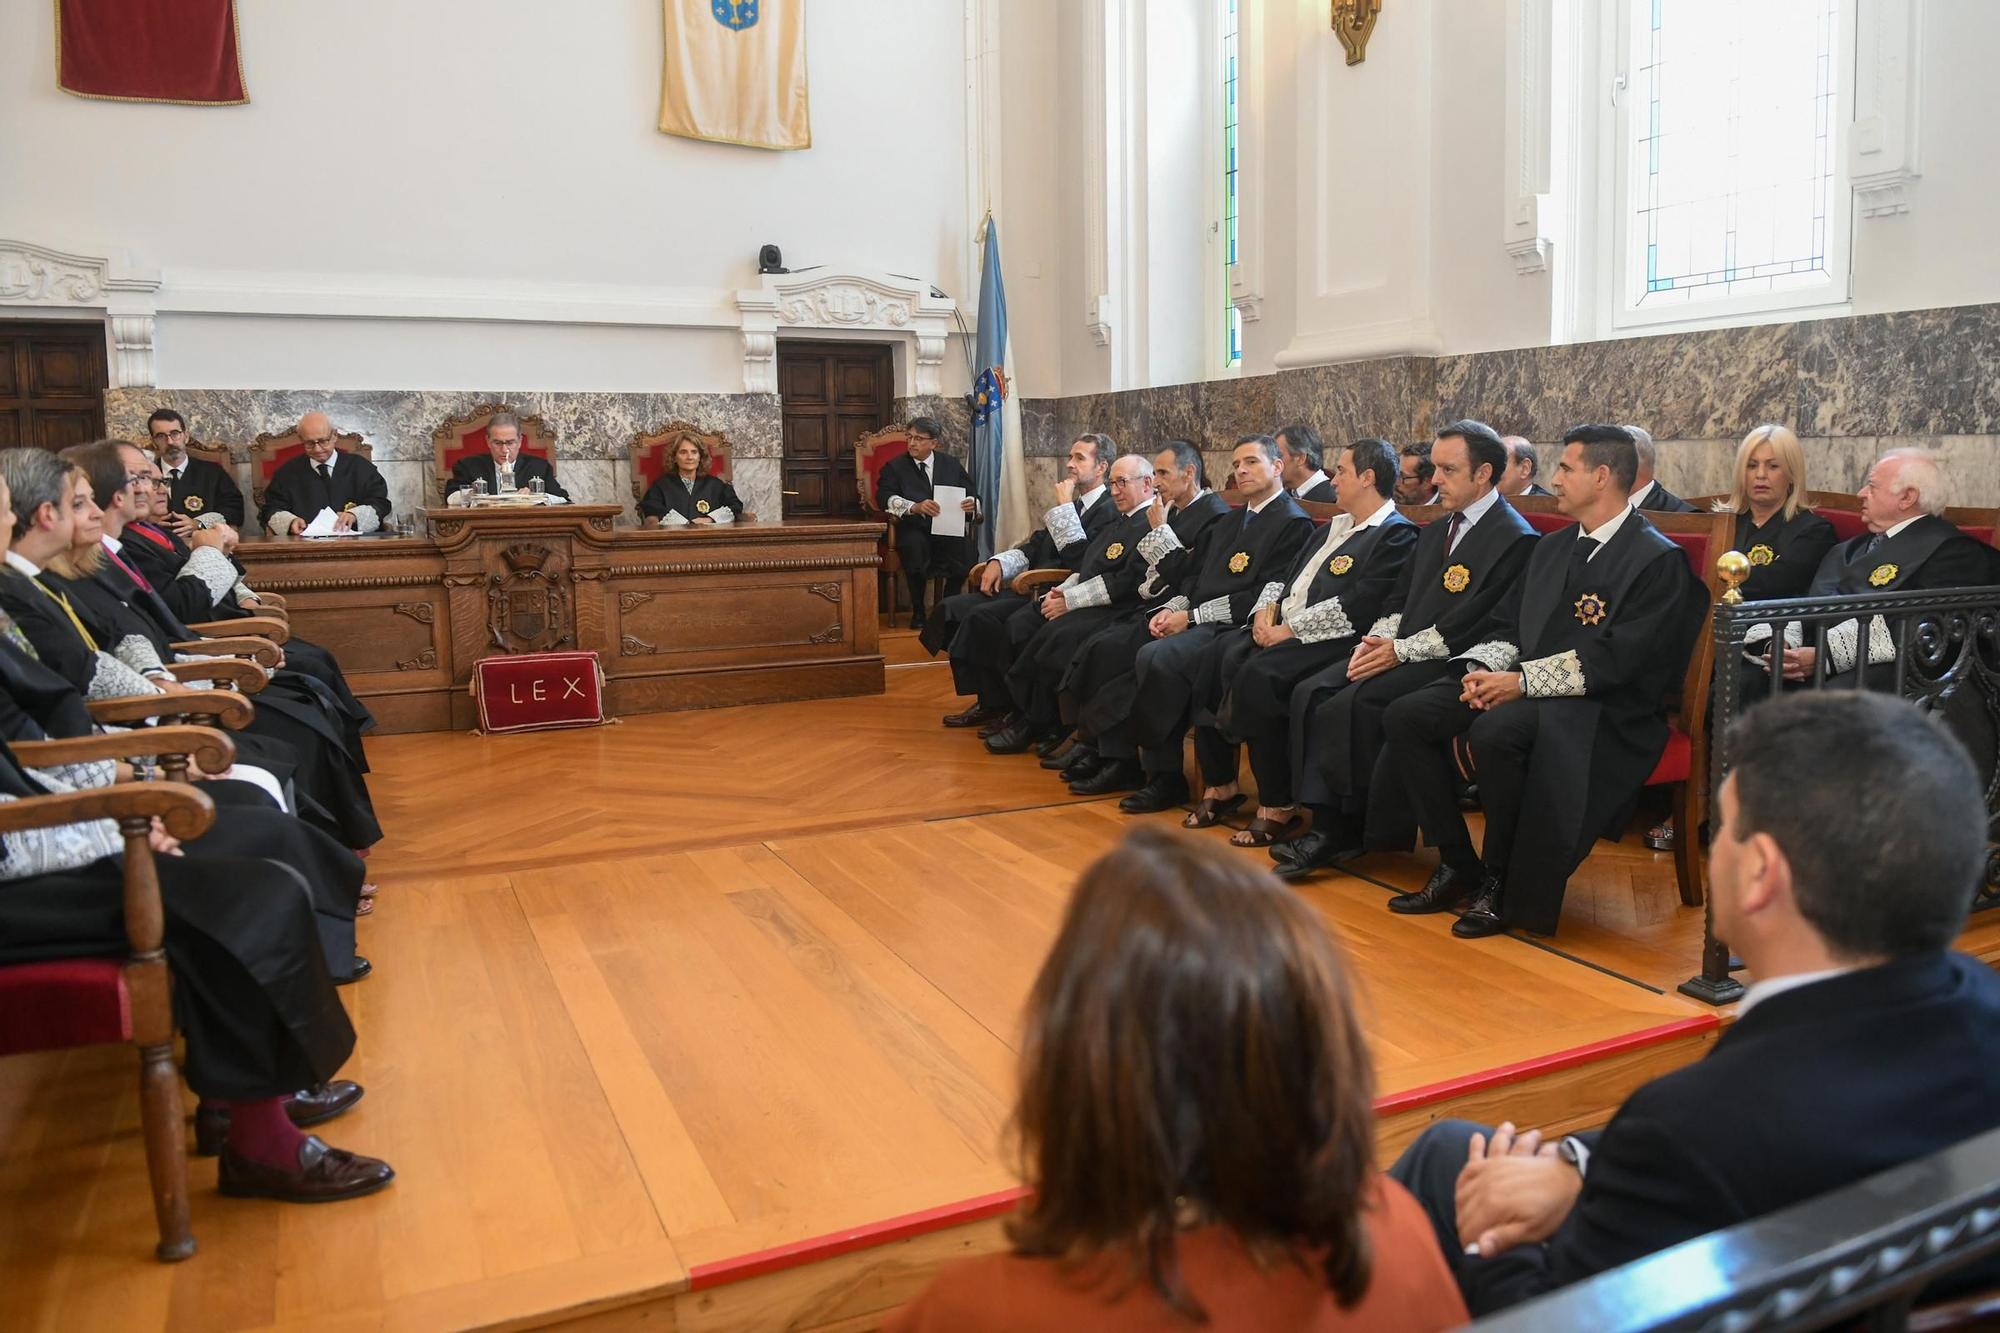 Acto oficial en A Coruña por la apertura del año judicial en Galicia